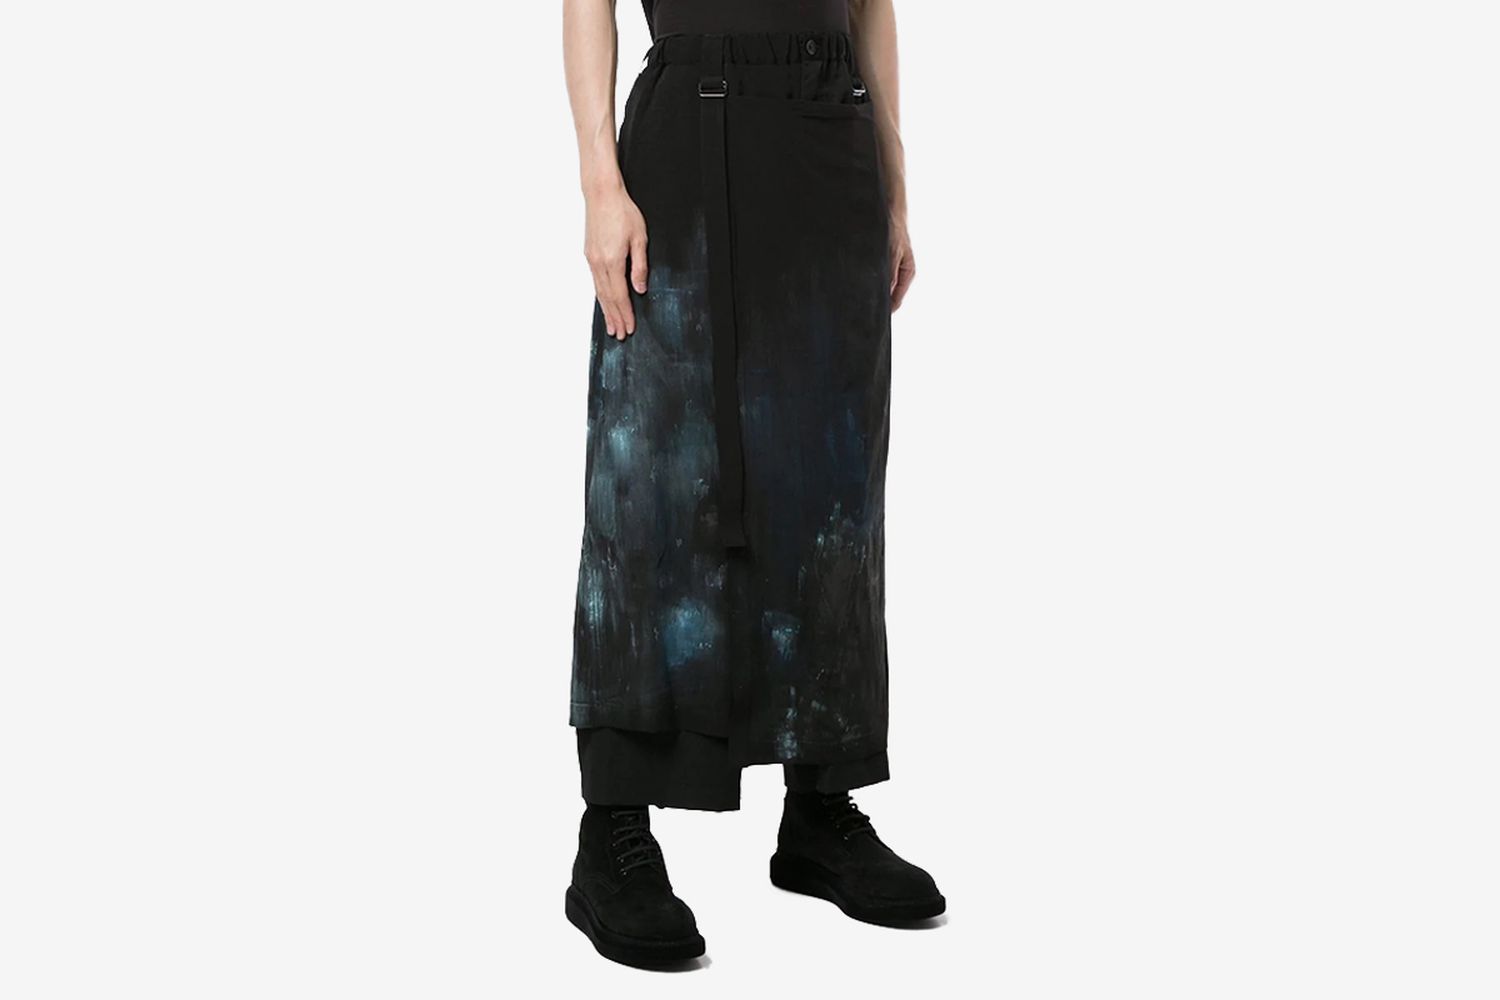 Skirt-Overlaid Asymmetric Trousers